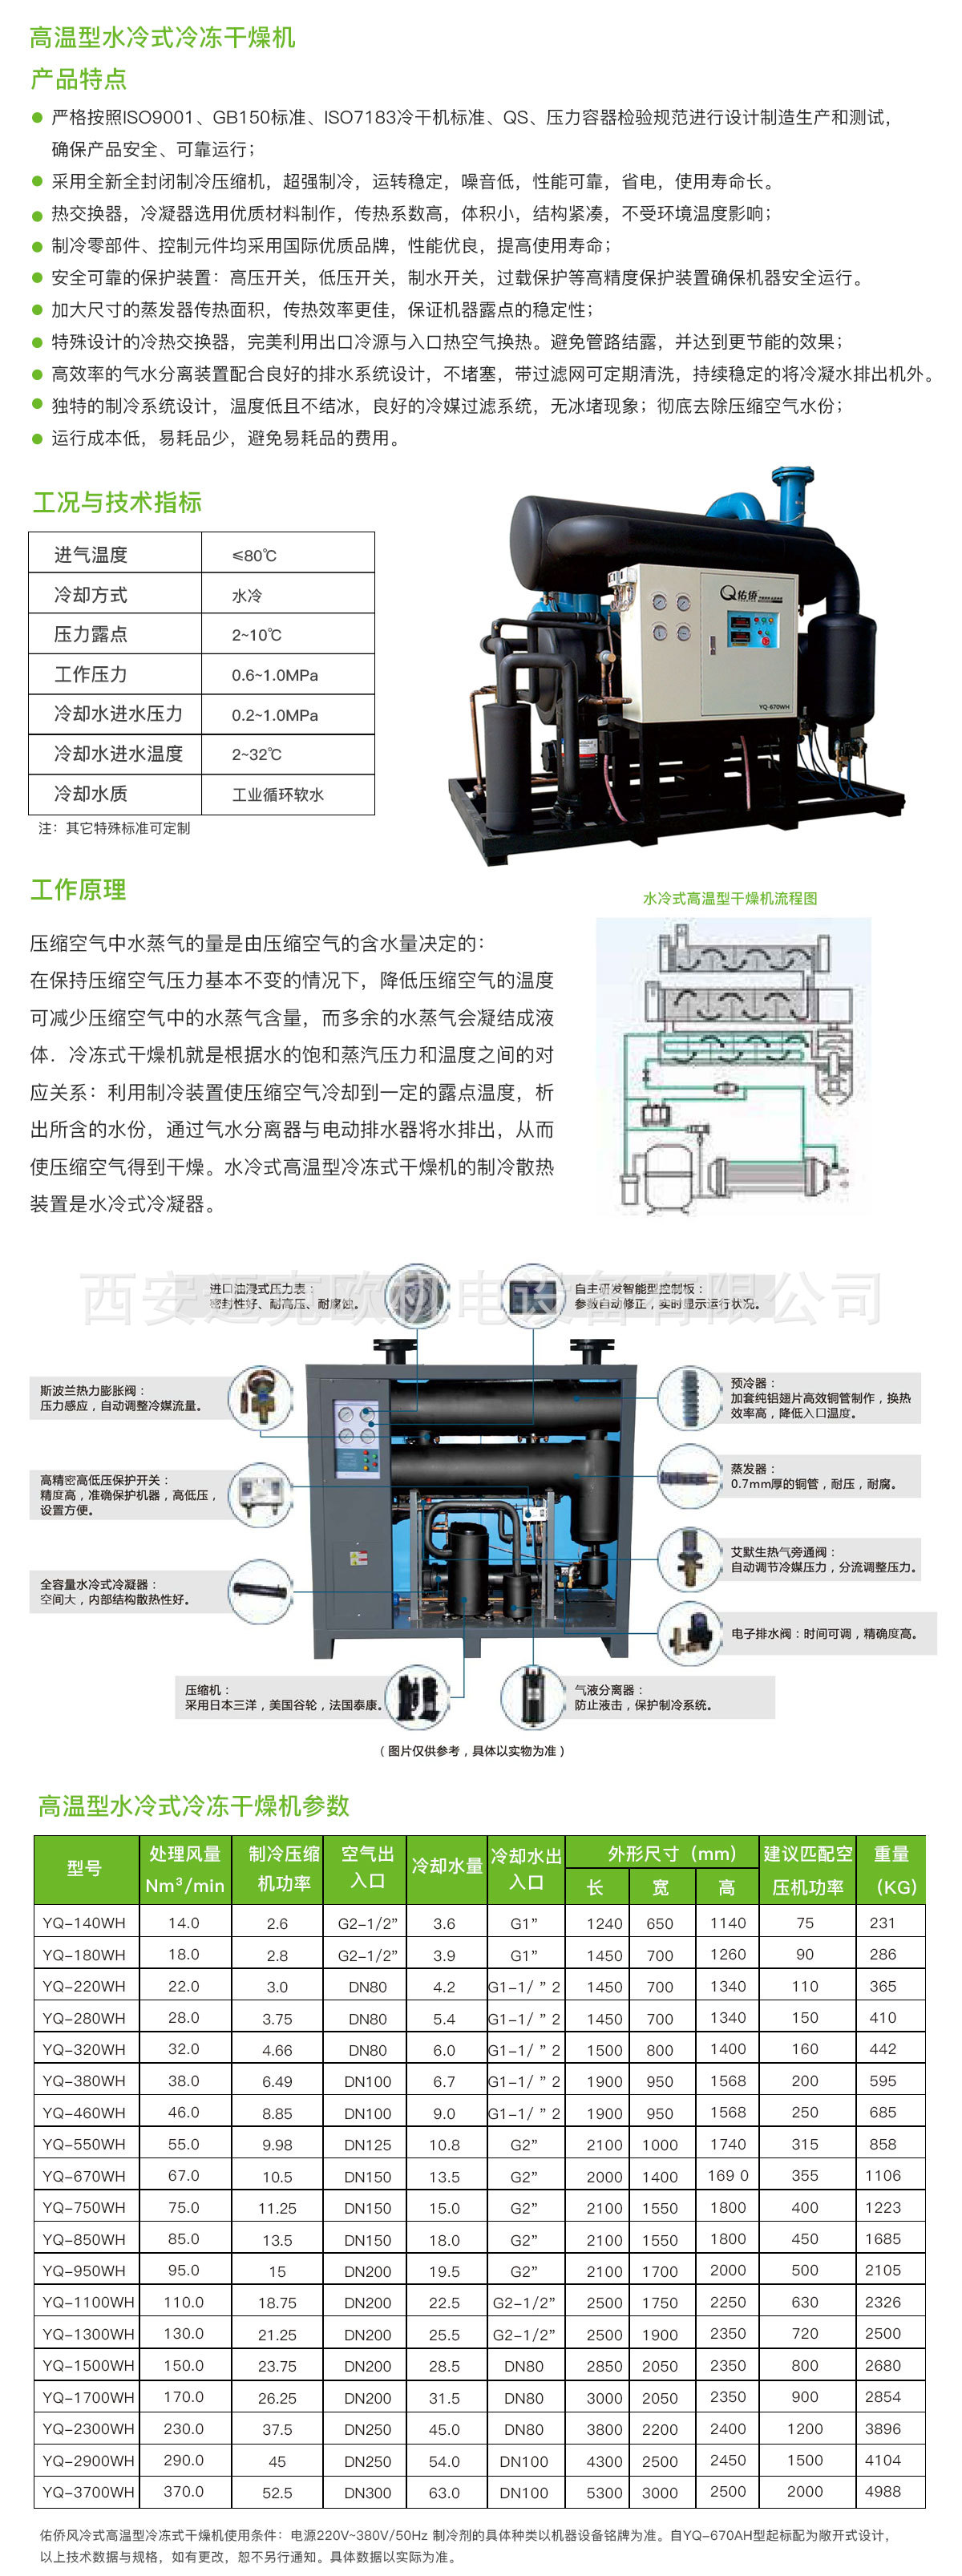 银川供应 YQ-850WH 佑侨冷干机、85m3水冷式高温型冷冻式干燥机示例图2